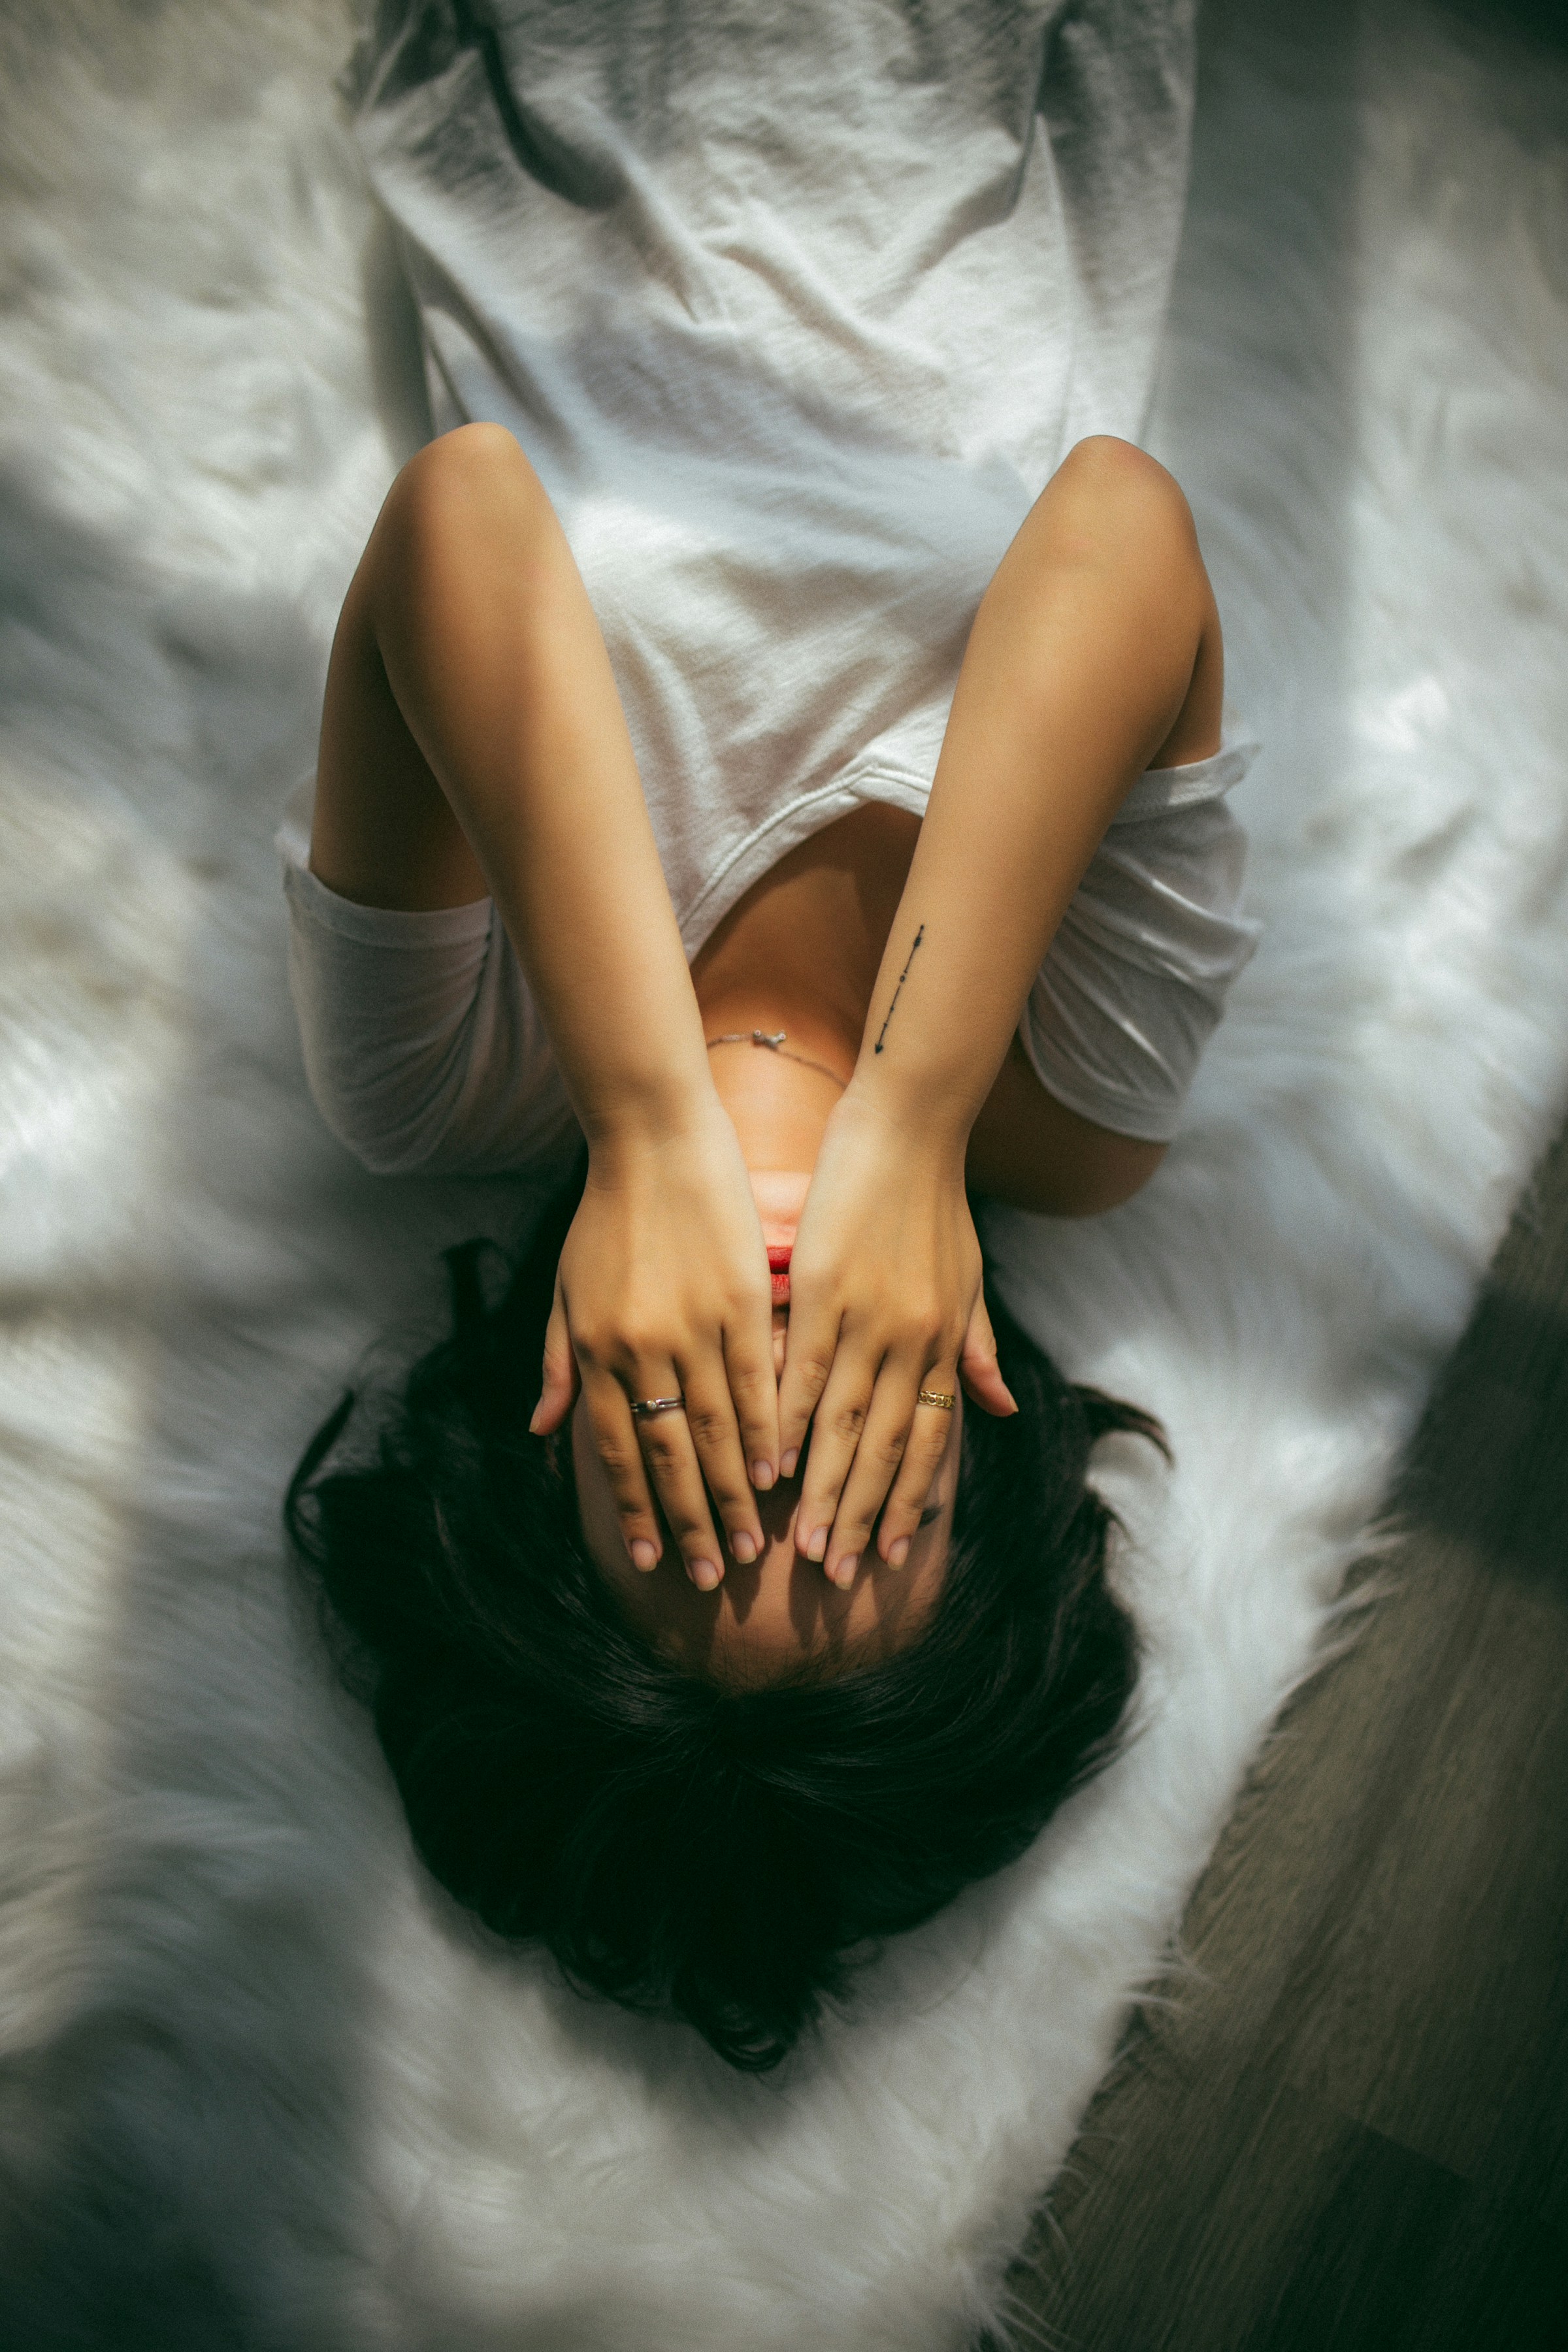 Una mujer tumbada en la cama ocultando su rostro | Foto: Unsplash